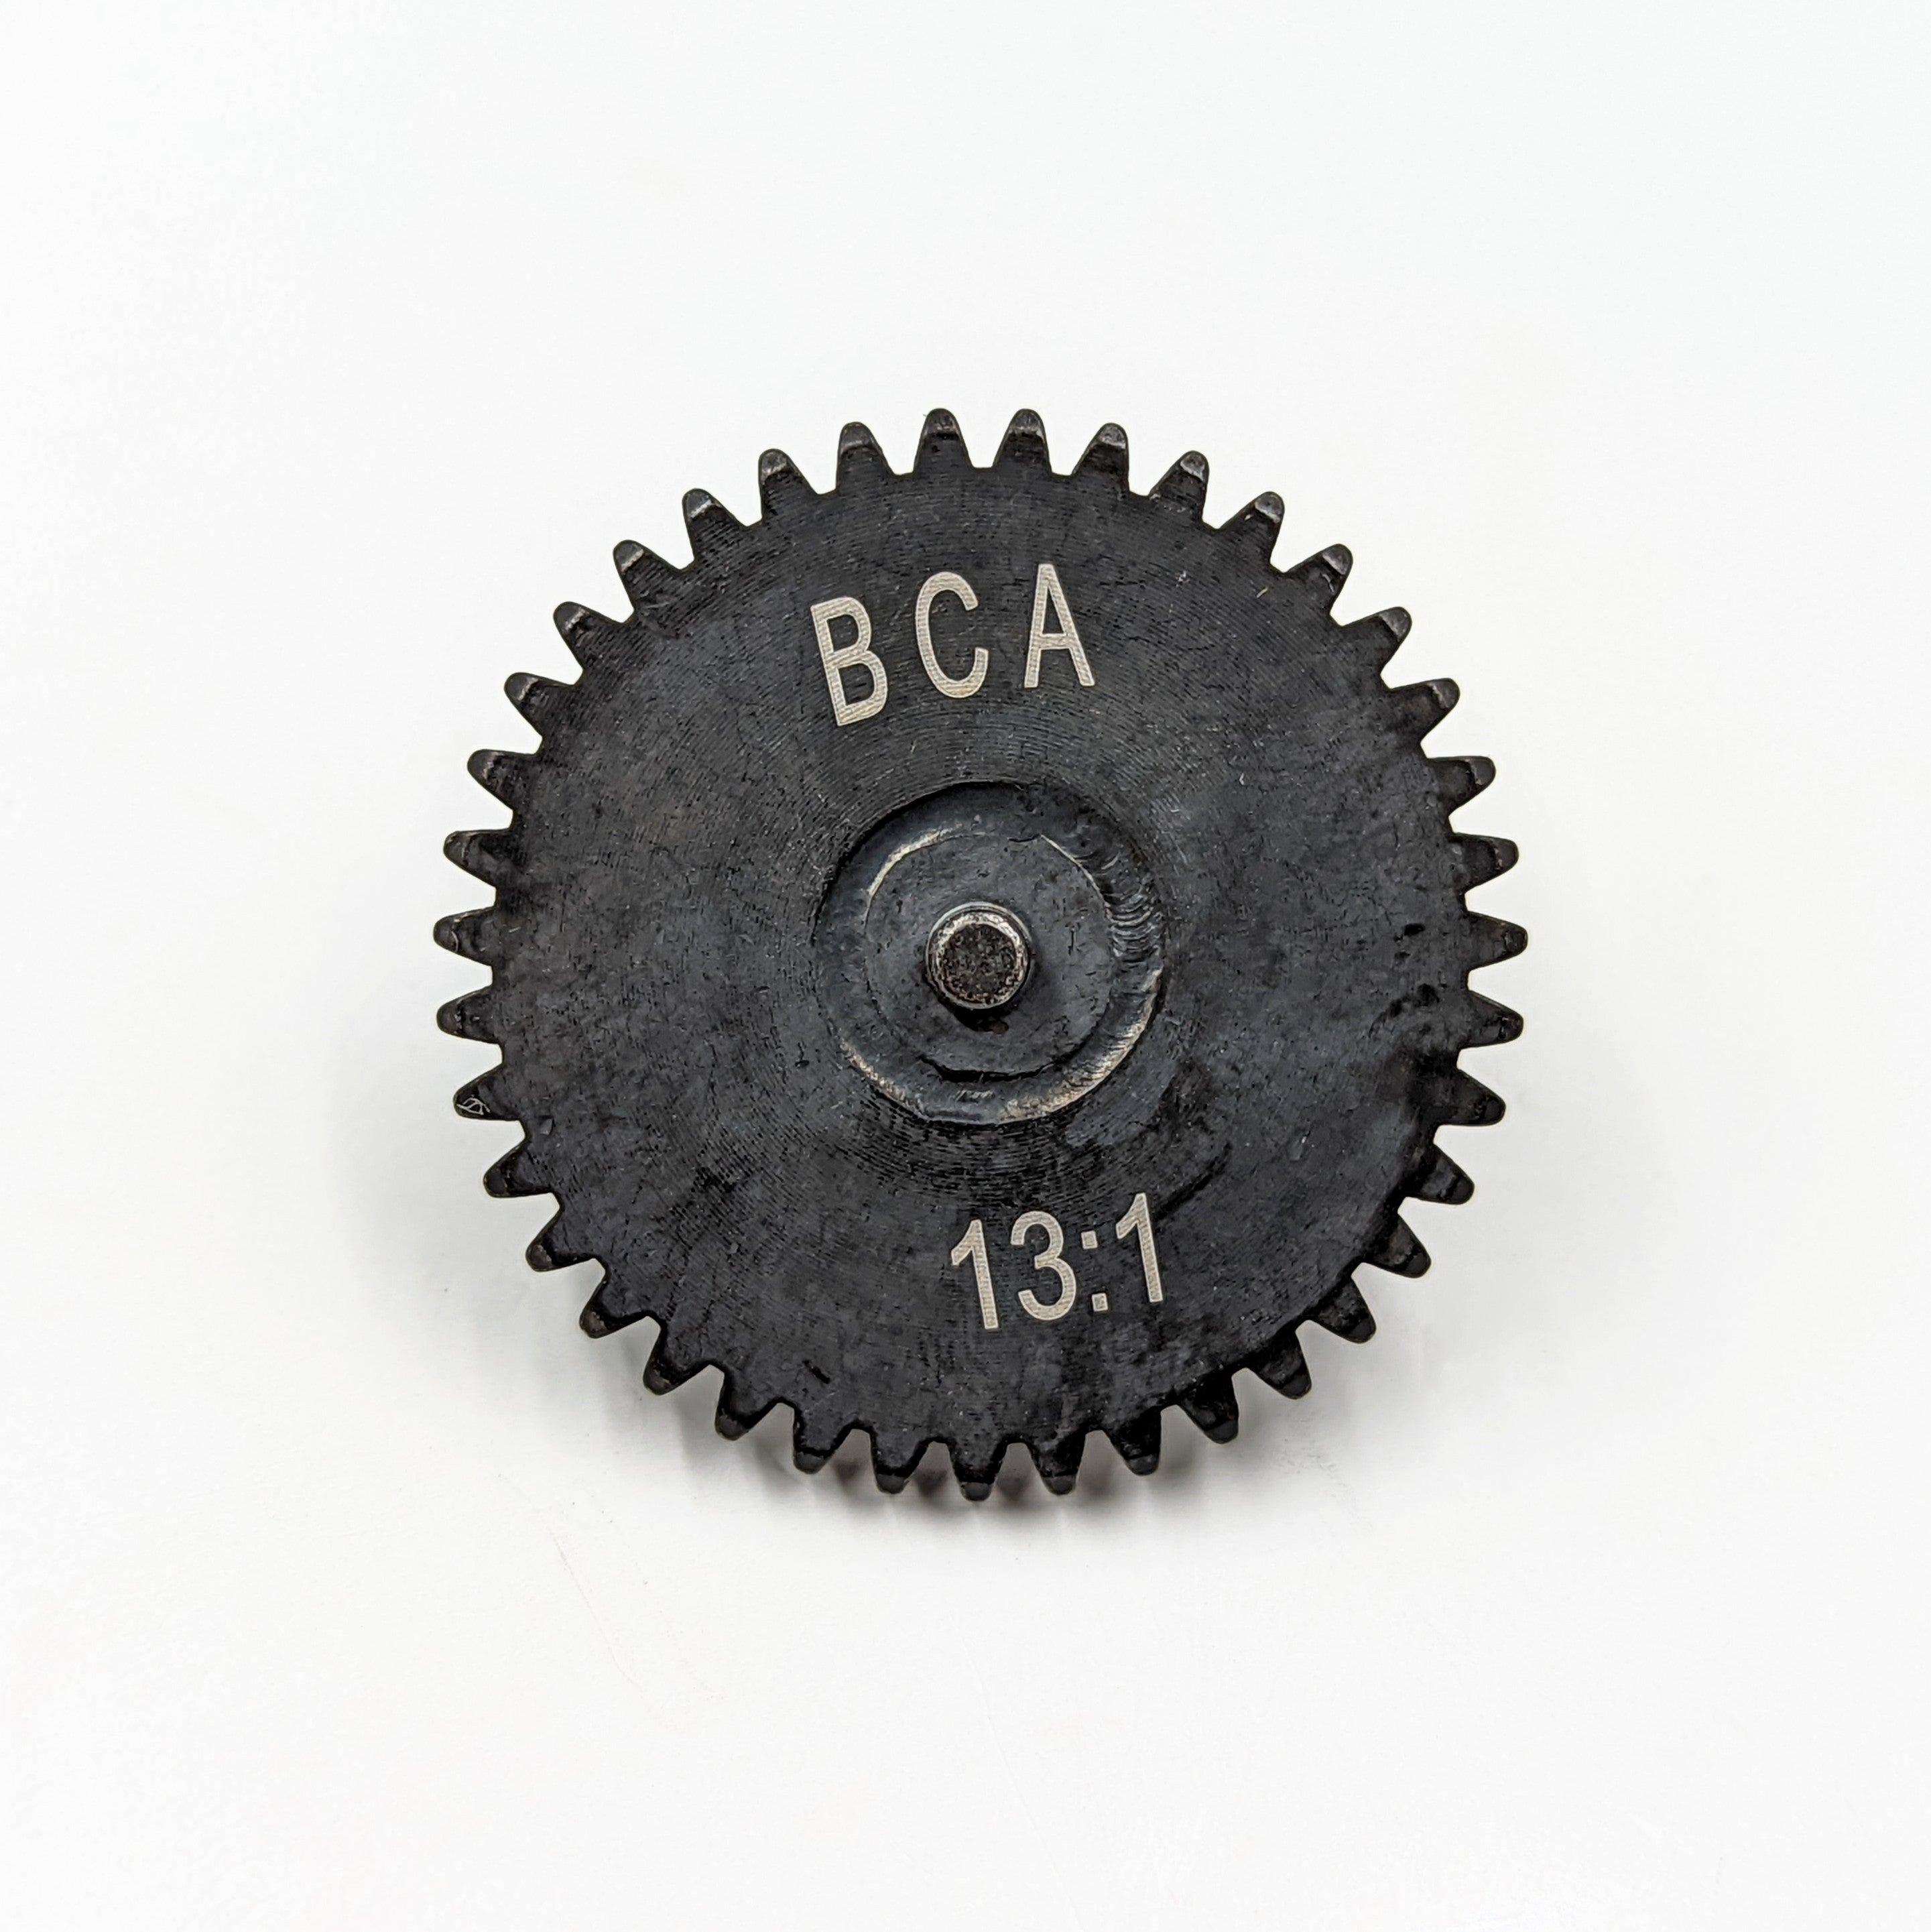 BCA Welded Steel AEG Gear Set (13:1 / 12:1)